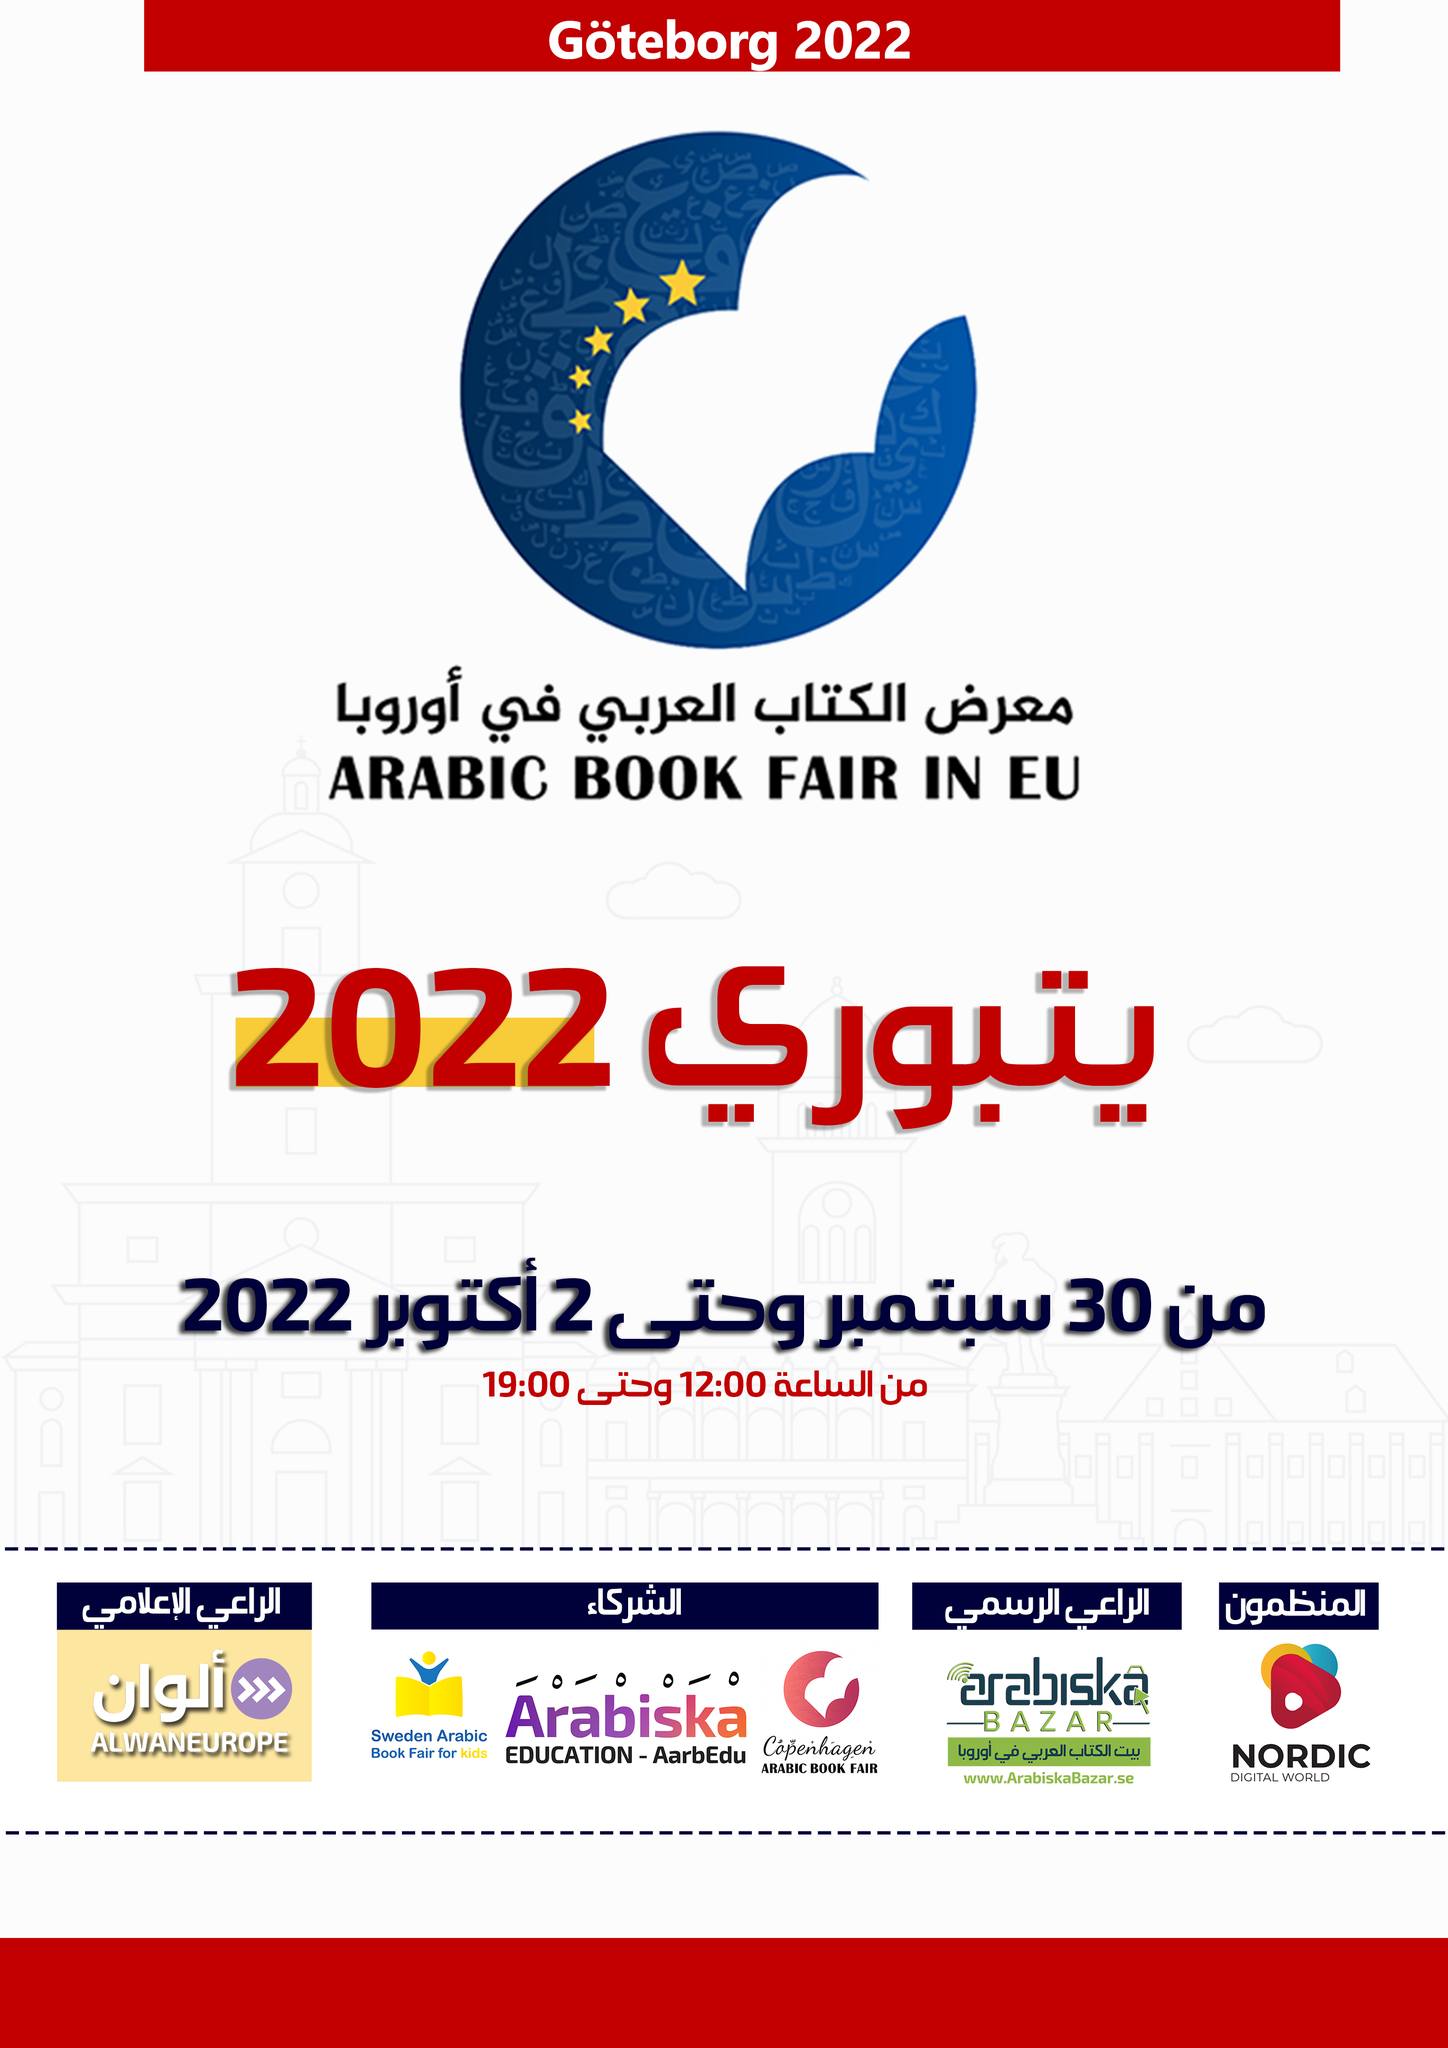 معارض الكتاب العربي في أوروبا